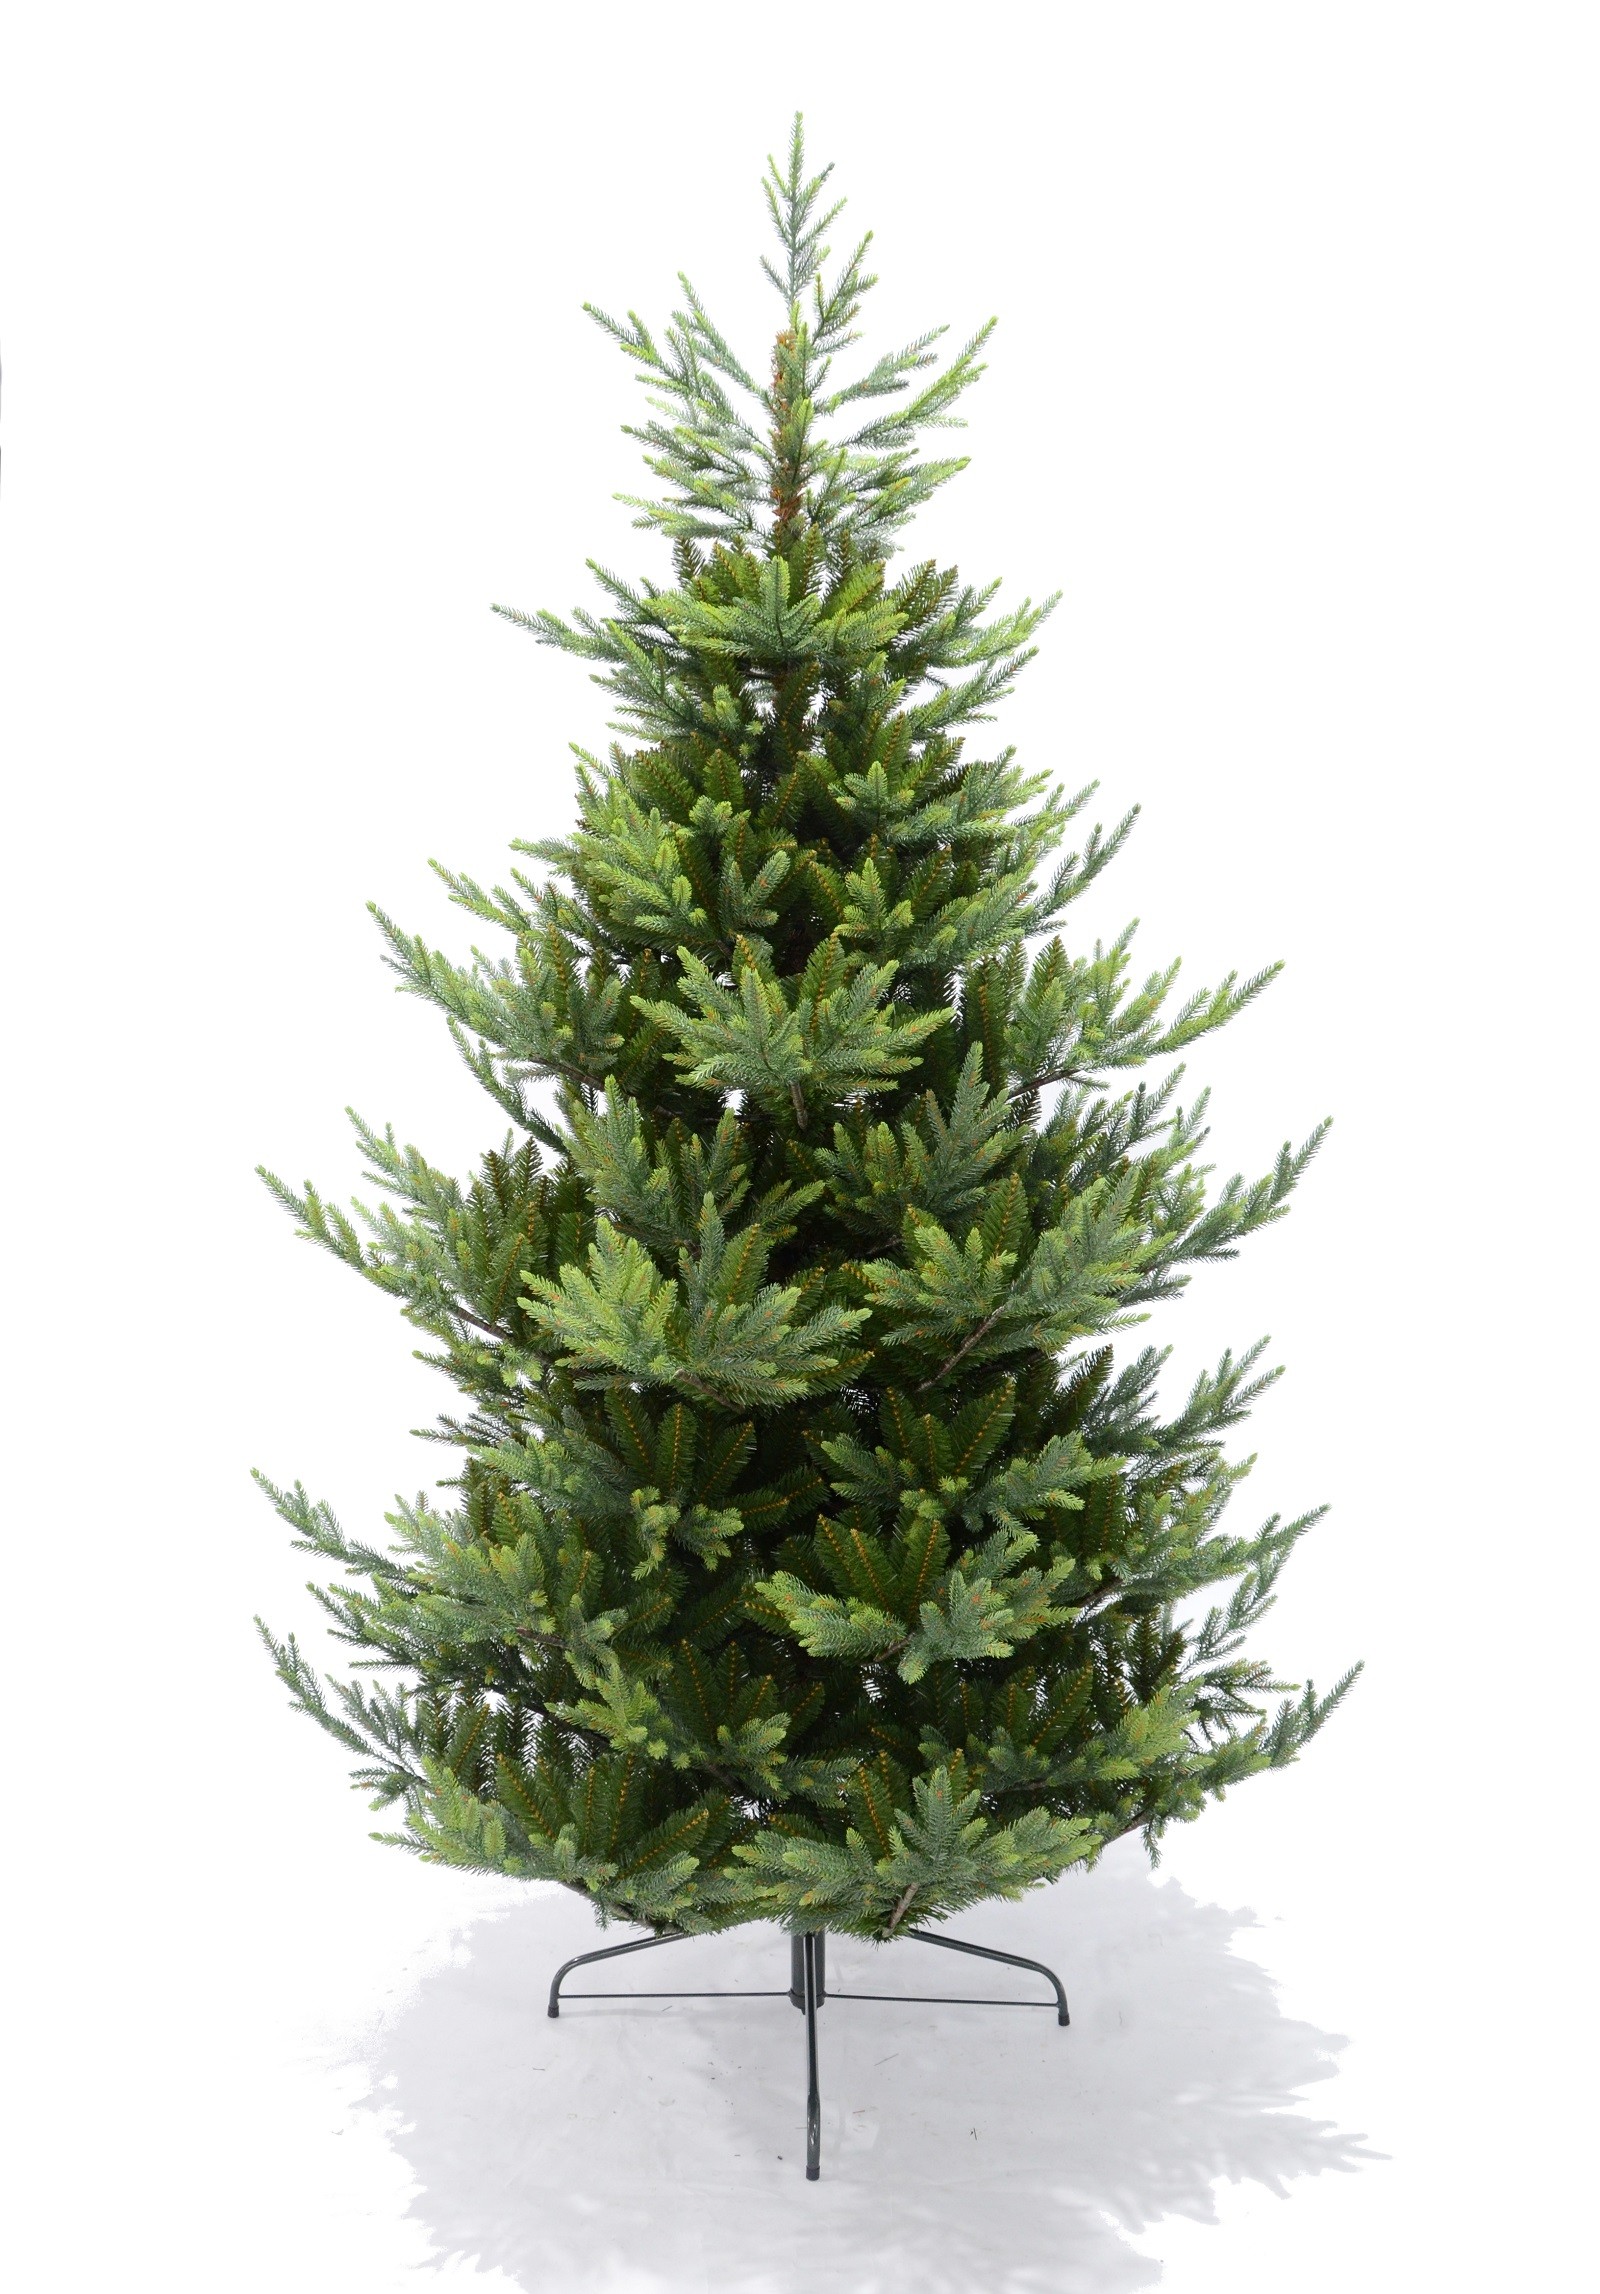 Künstlicher Weihnachtsbaum Tannenbaum PE / PVC mix - Modelle 2019